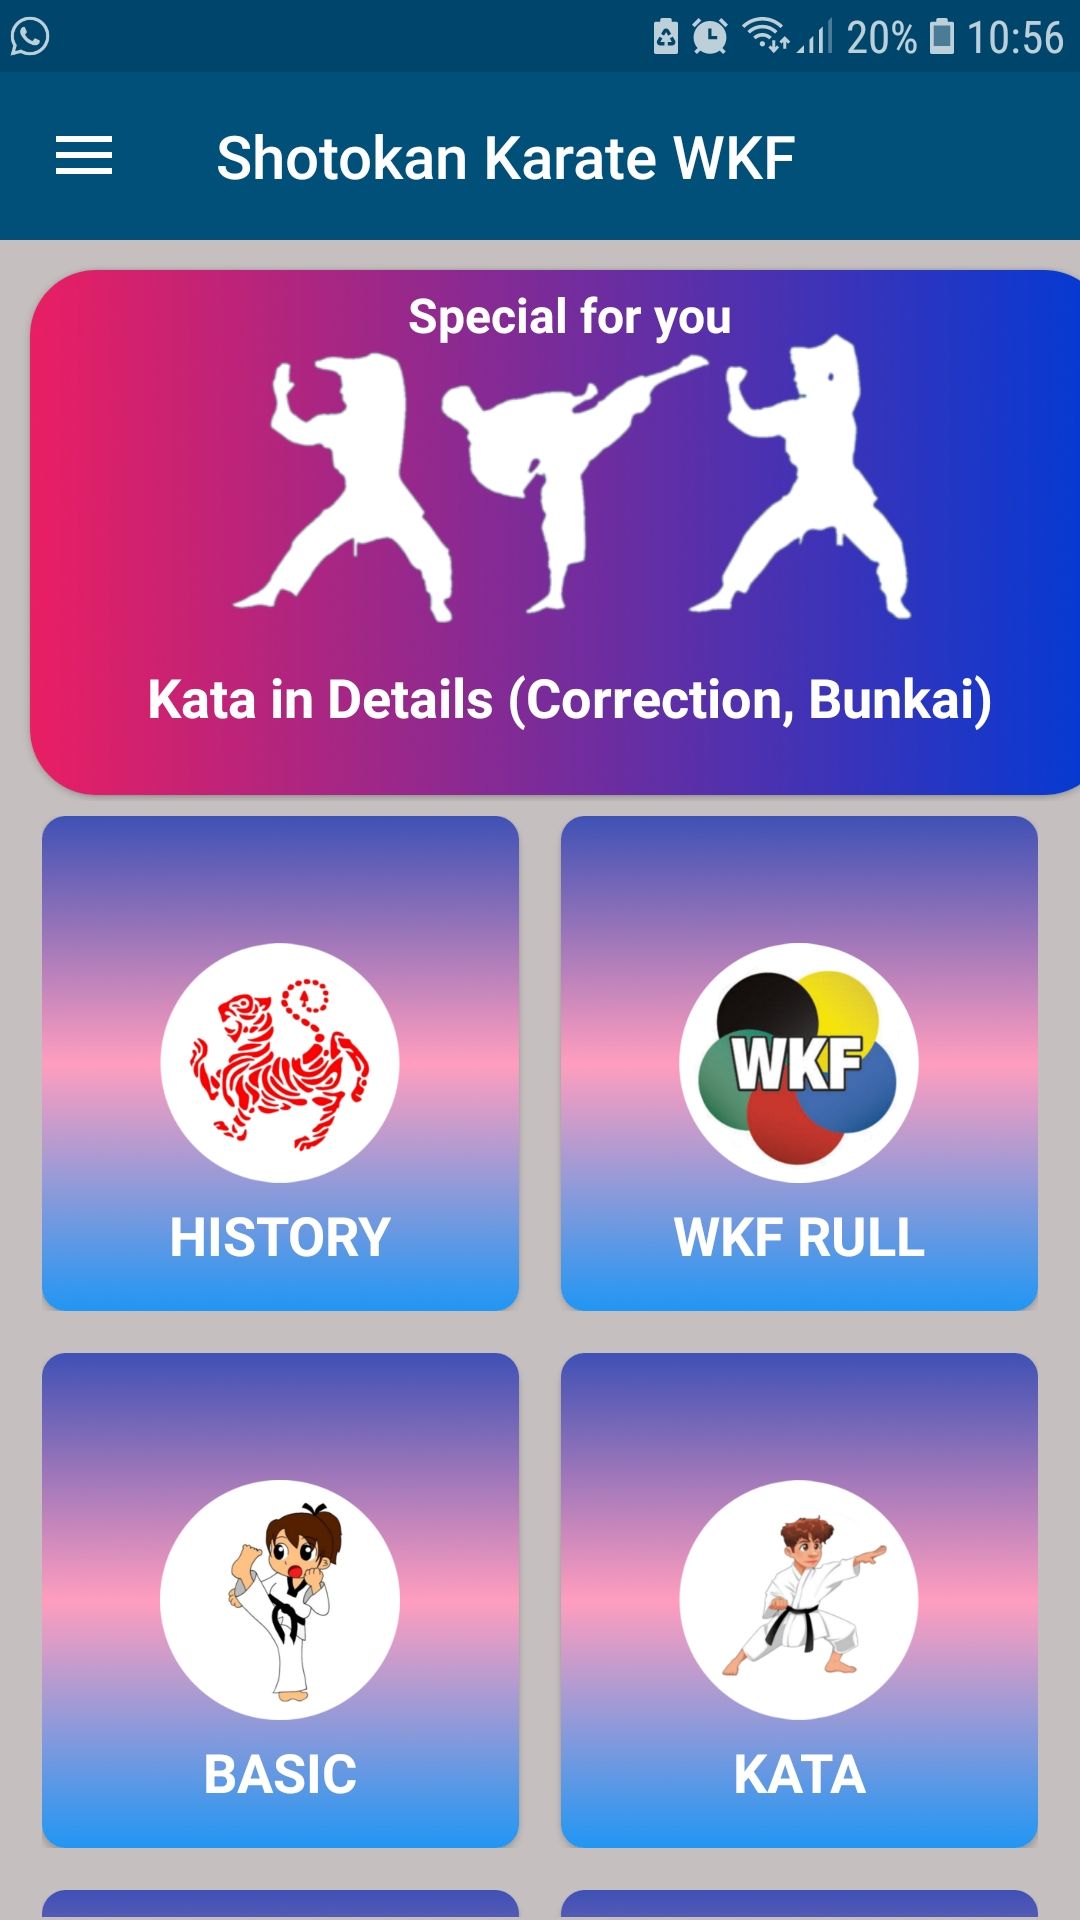 Shotokan karate WKF mobile app